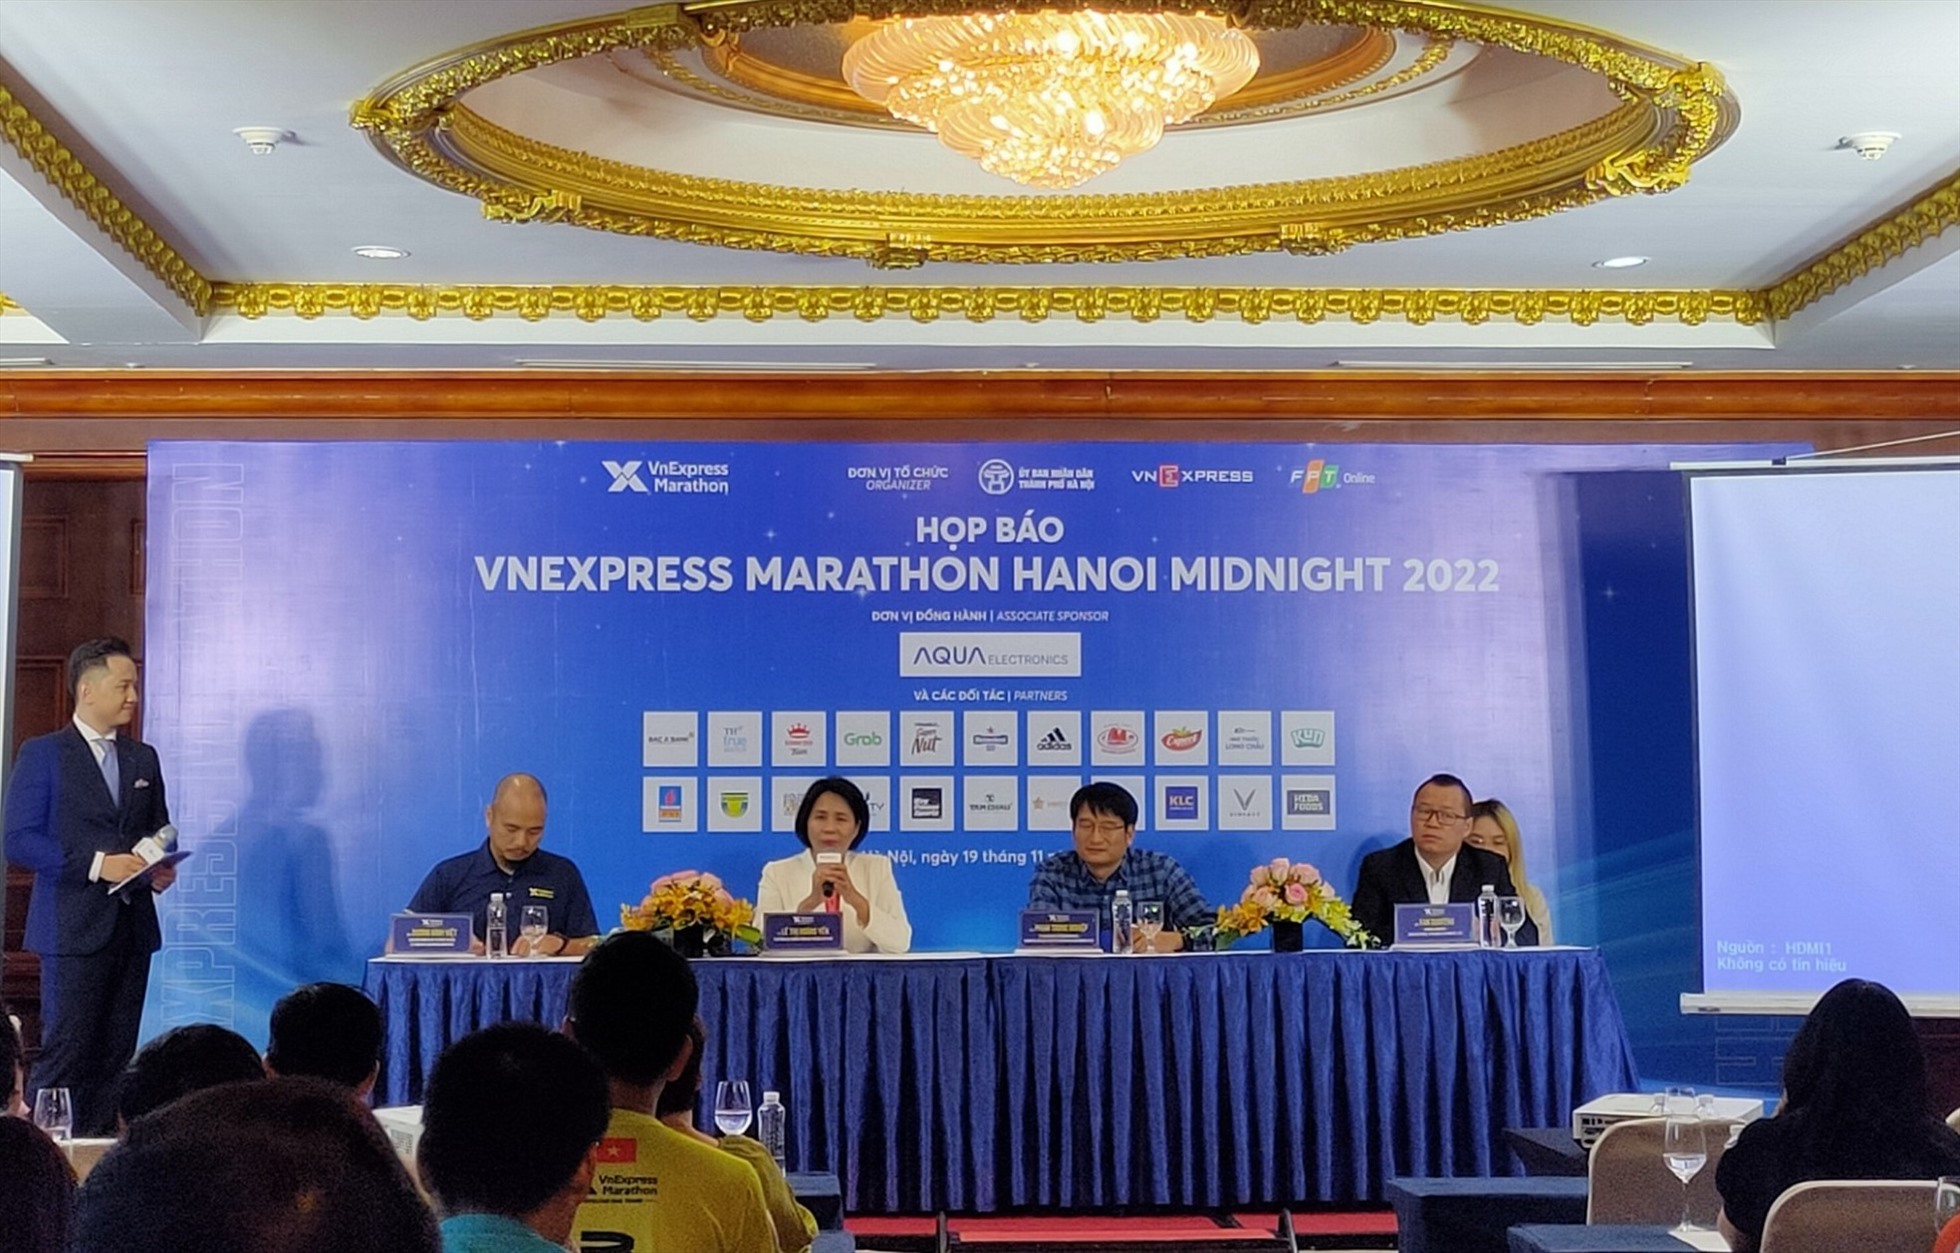 Bà Lê Thị Hoàng Yến - Phó tổng cục trưởng Tổng cục Thể dục thể thao, cùng đại diện ban tổ chức VnExpress Marathon Hanoi Midnight giải đáp các vấn đề được đưa ra. Ảnh: T.N